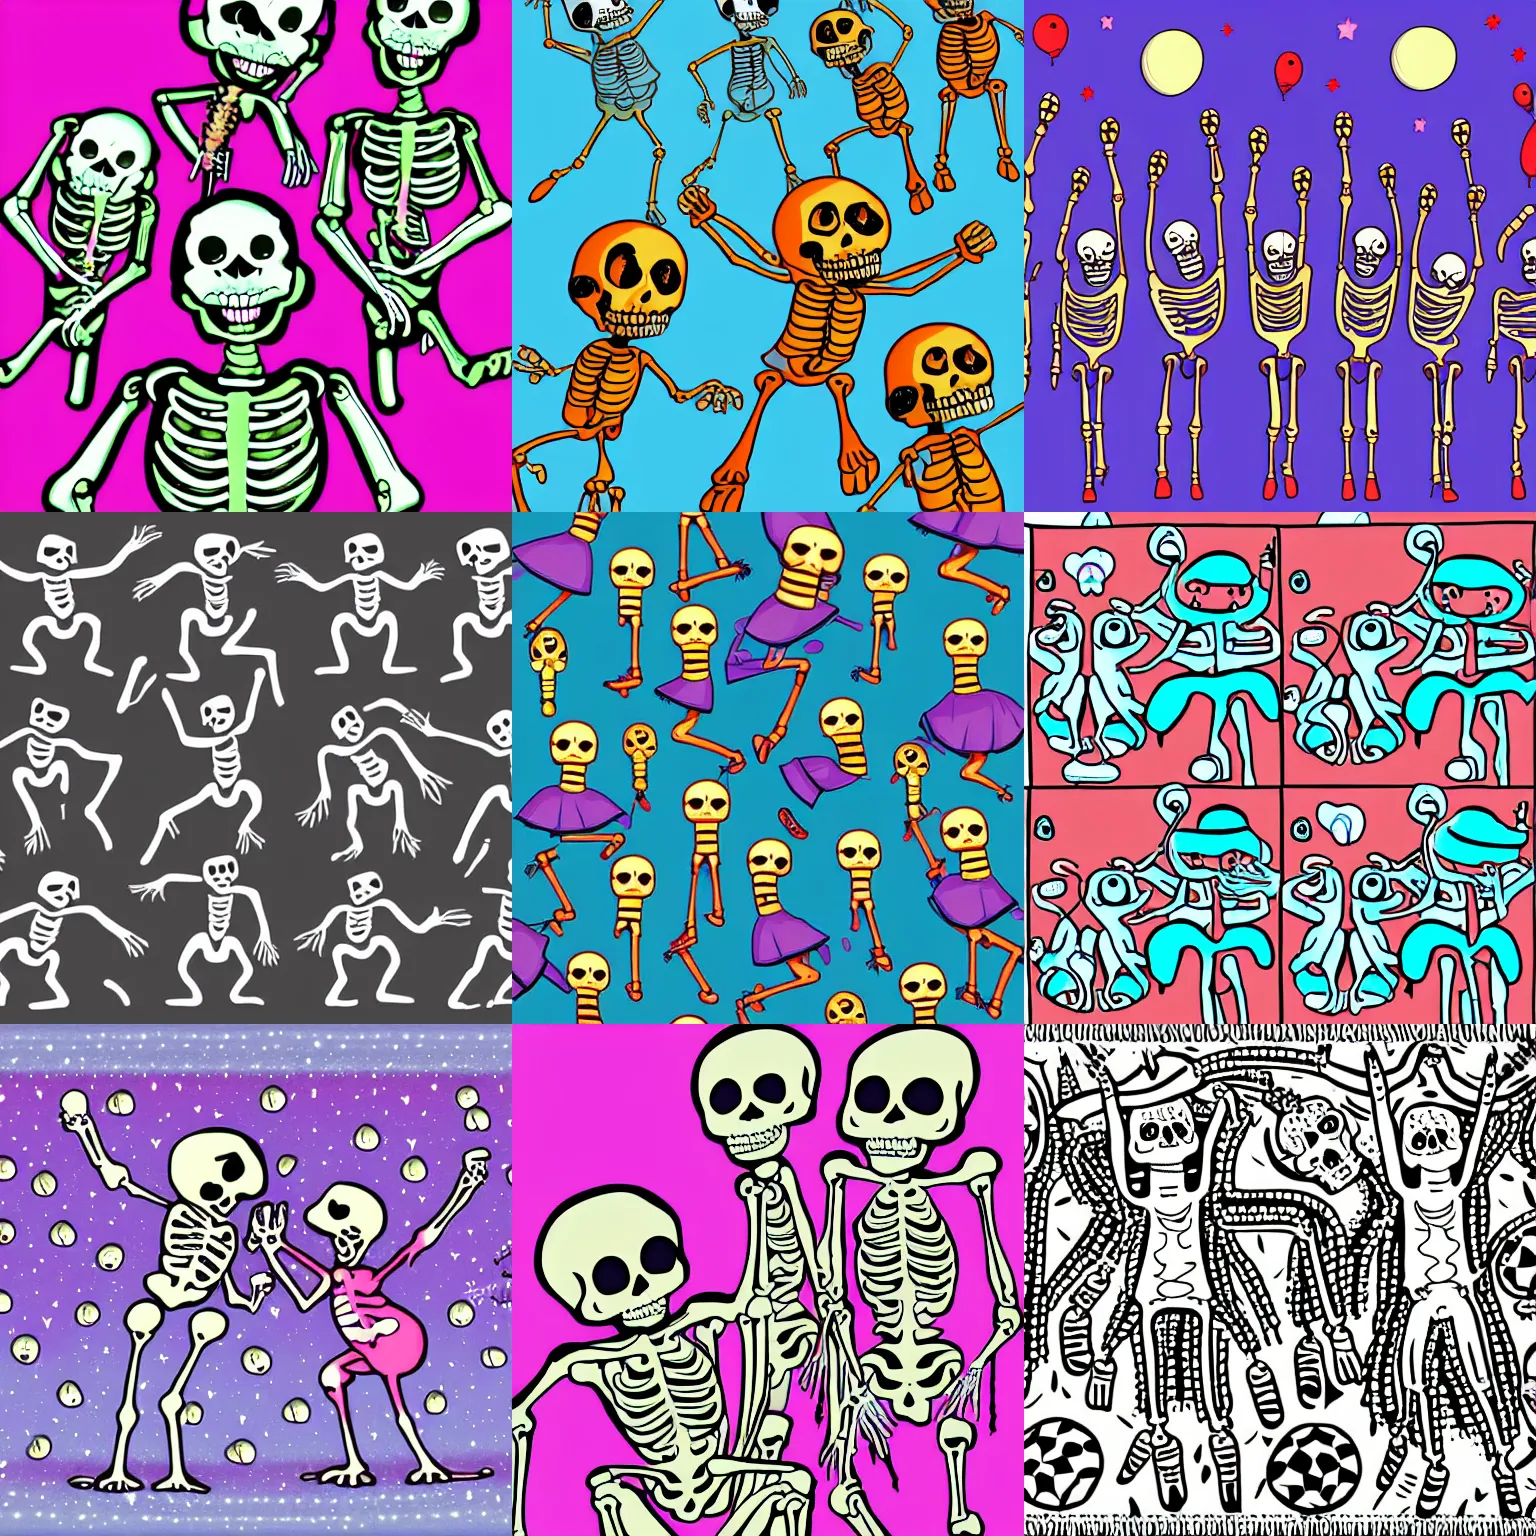 Prompt: skeletons dancing in a disco, cute cartoon digital art